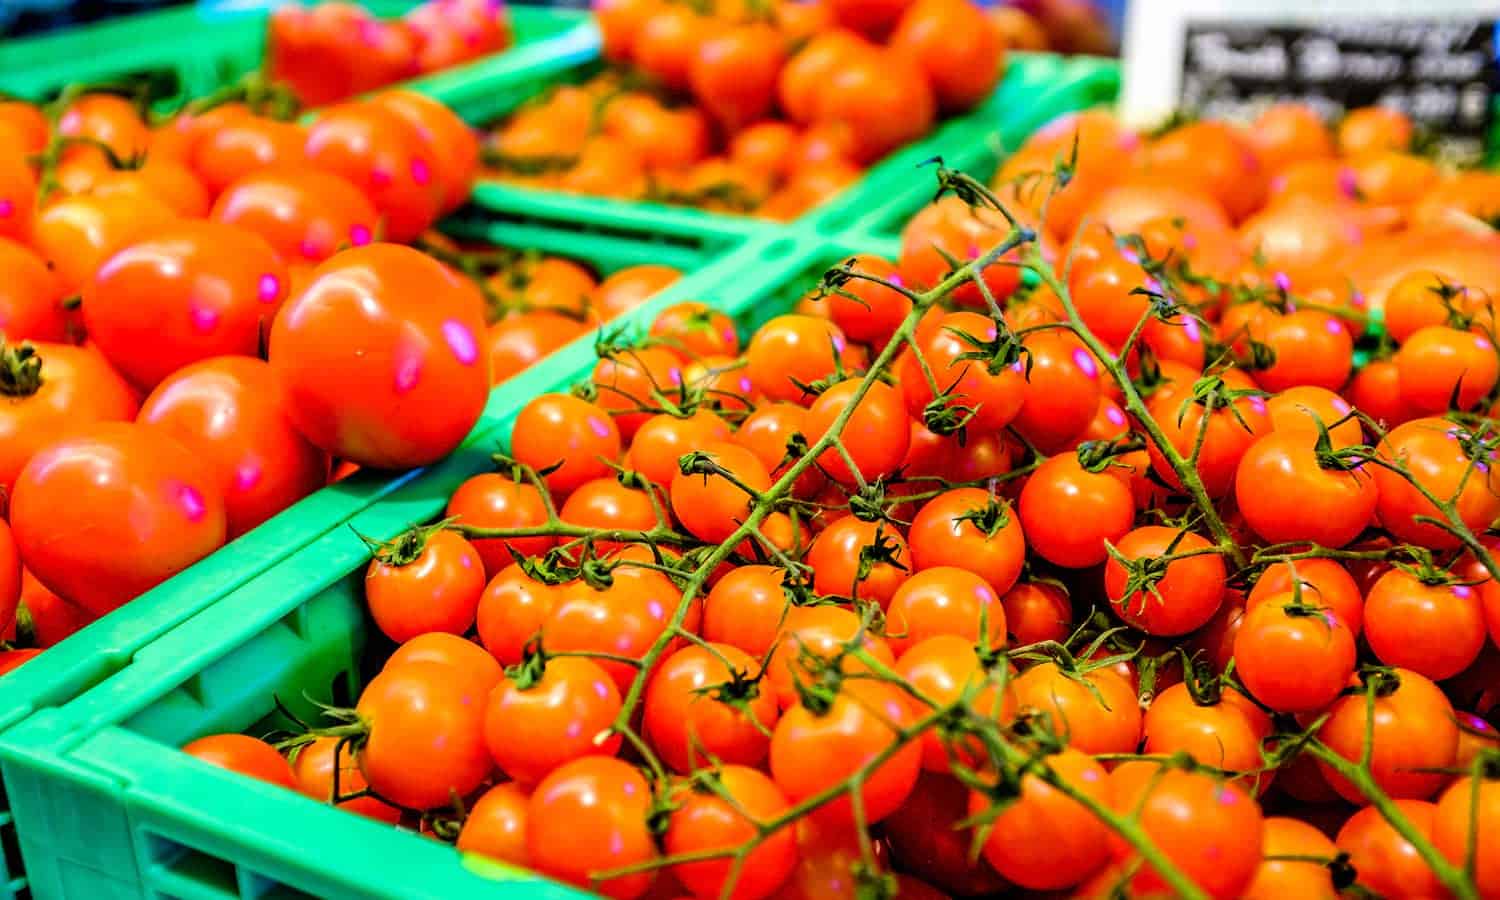 收益正在与地方政府和企业一起，以防止收获后损失，并改善使用西红柿的全球营养机会。